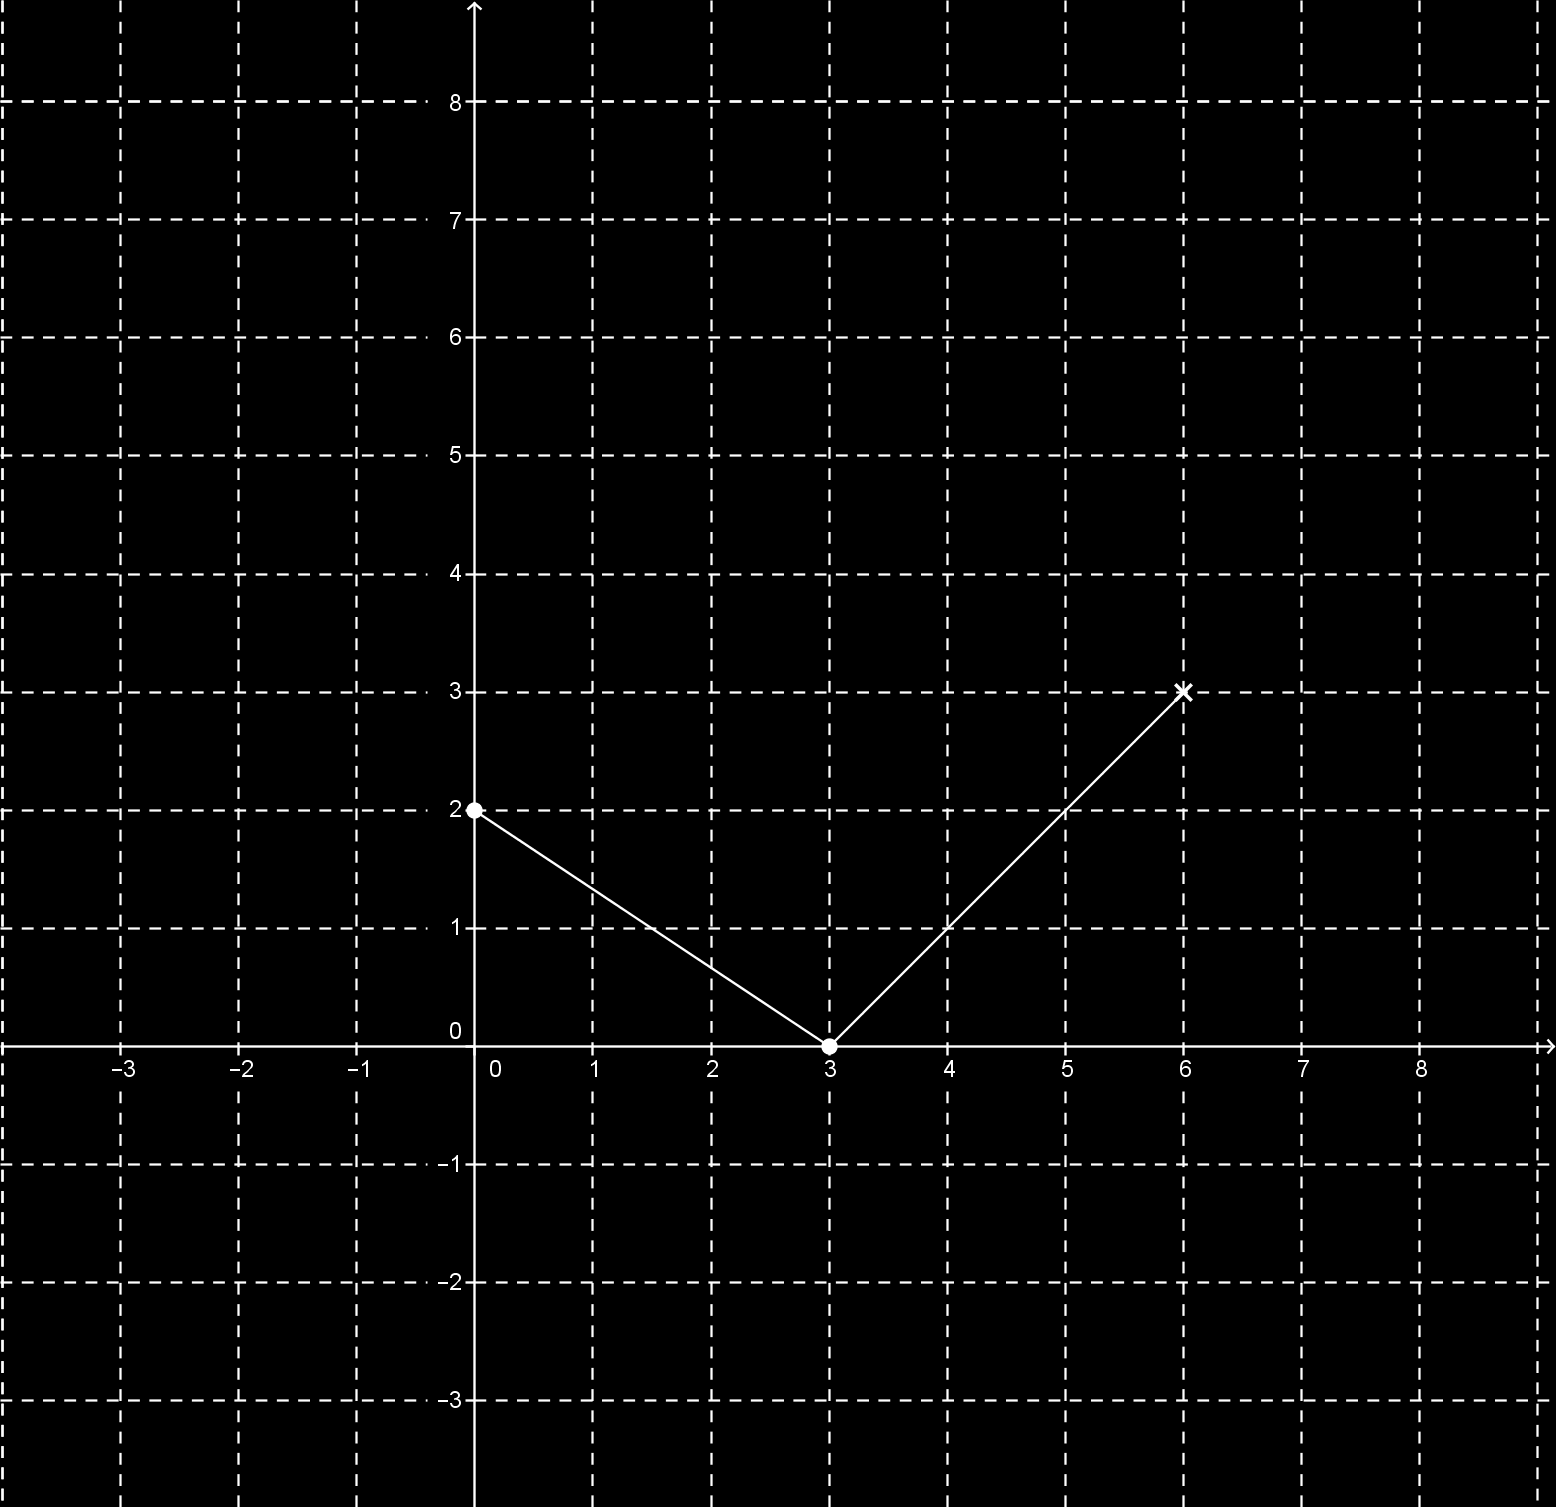 c) eltolás az y tengely mentén +2-vel: d) eltolás az x